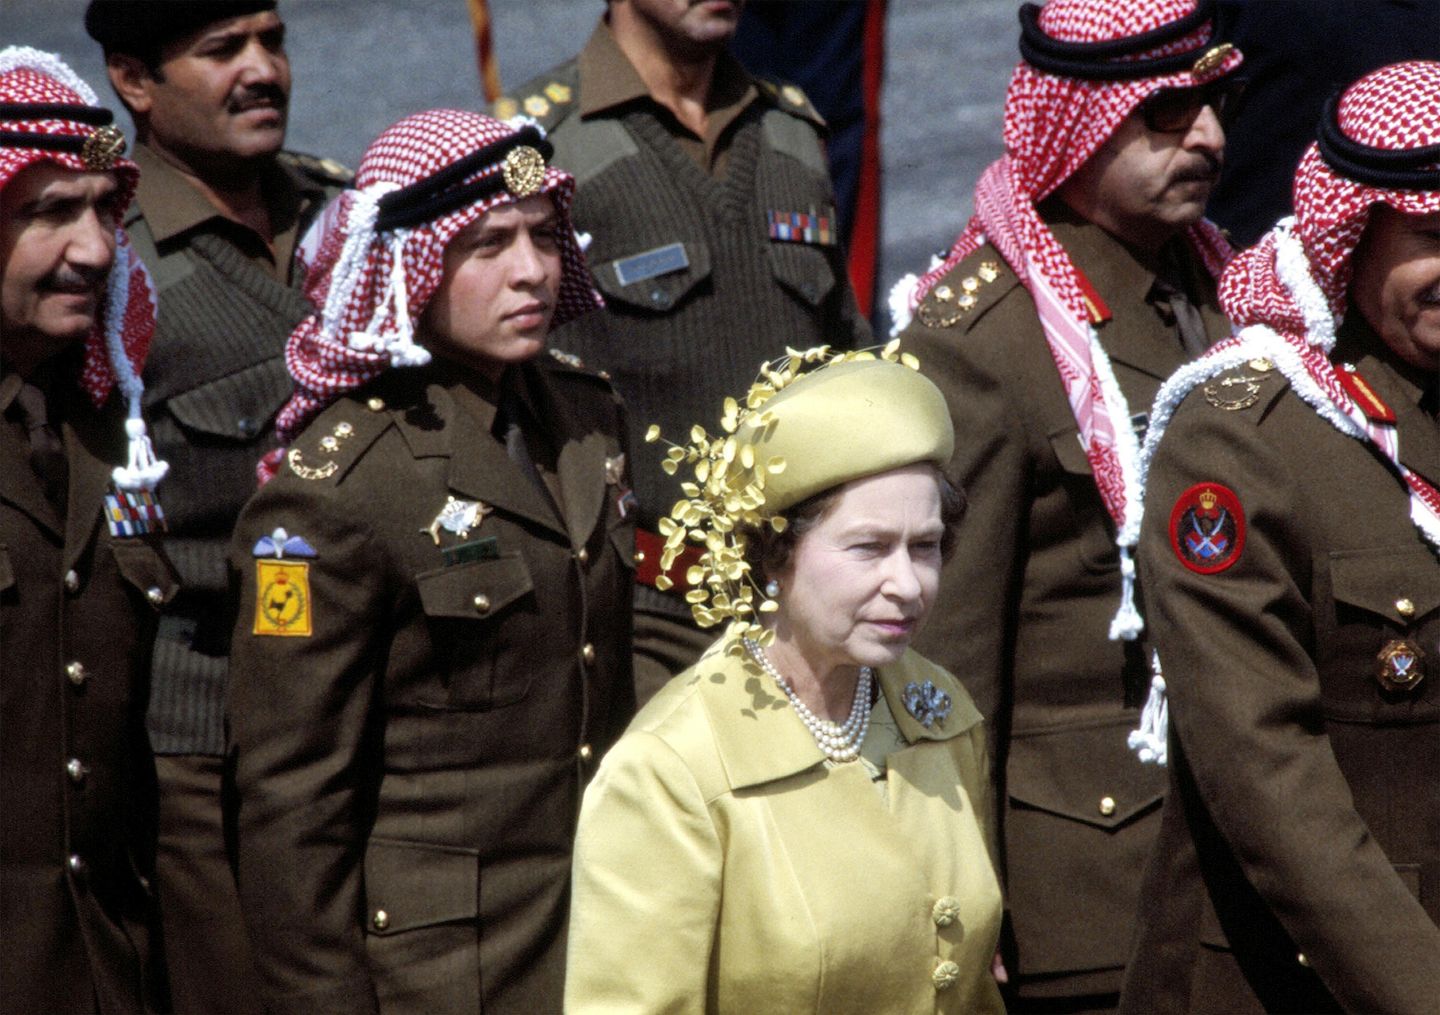 Kraliçe'nin saltanatı, İngilizlerin Ortadoğu'yu karışık bir mirasla terk ettiğini gördü